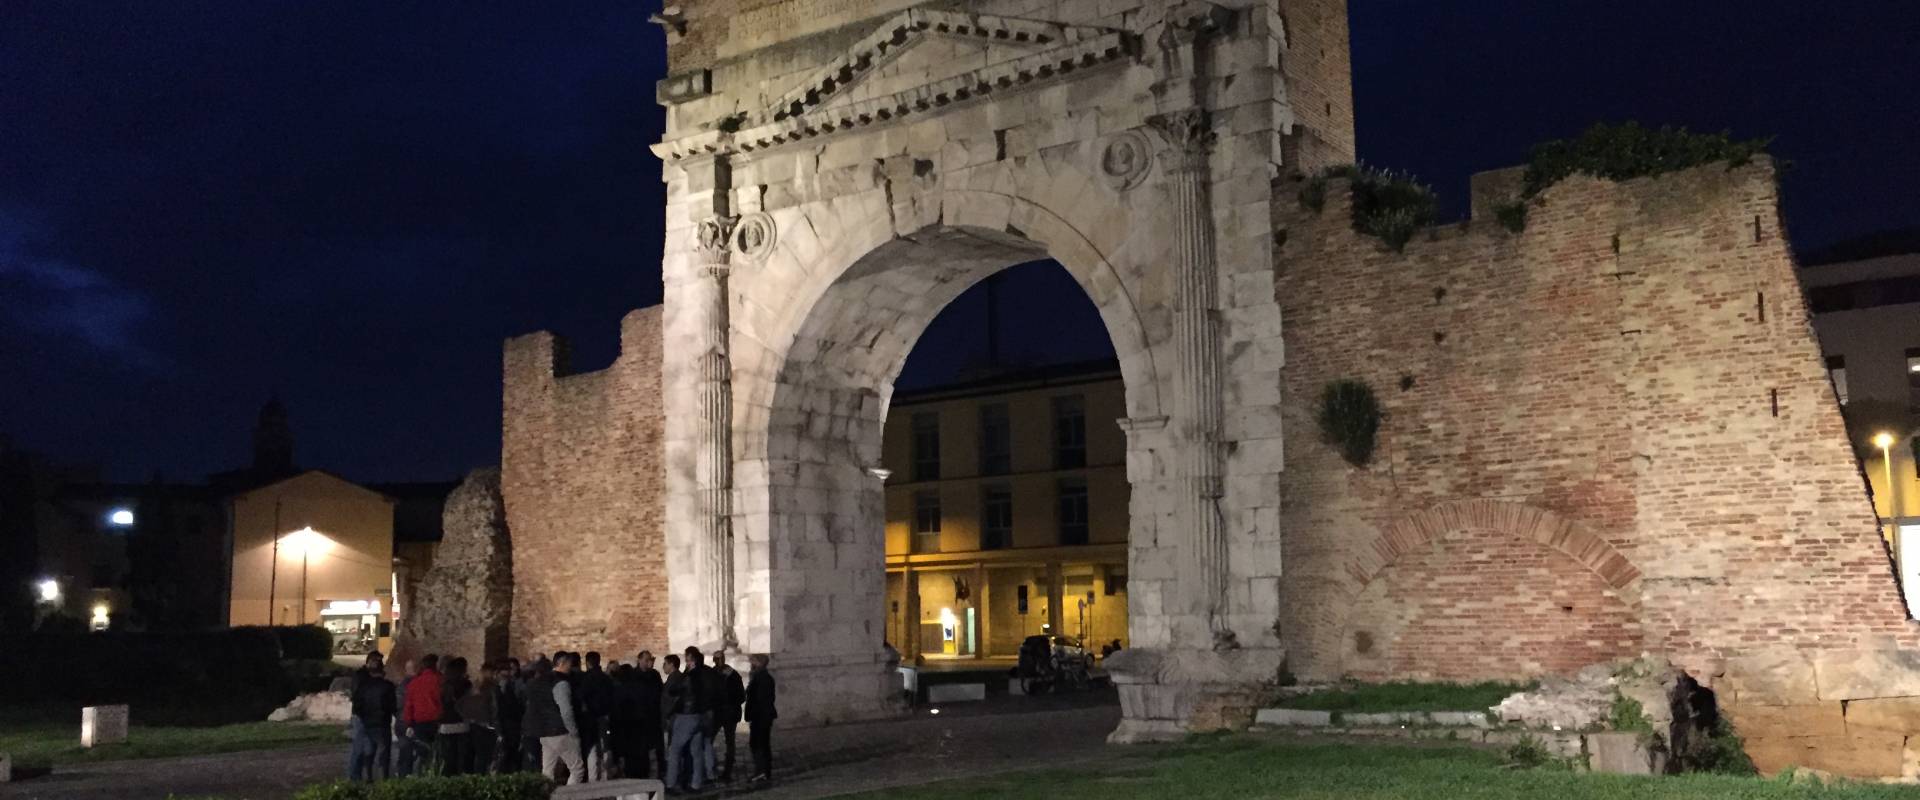 Arco di Augusto - Rimini, Italia foto di Gretelix